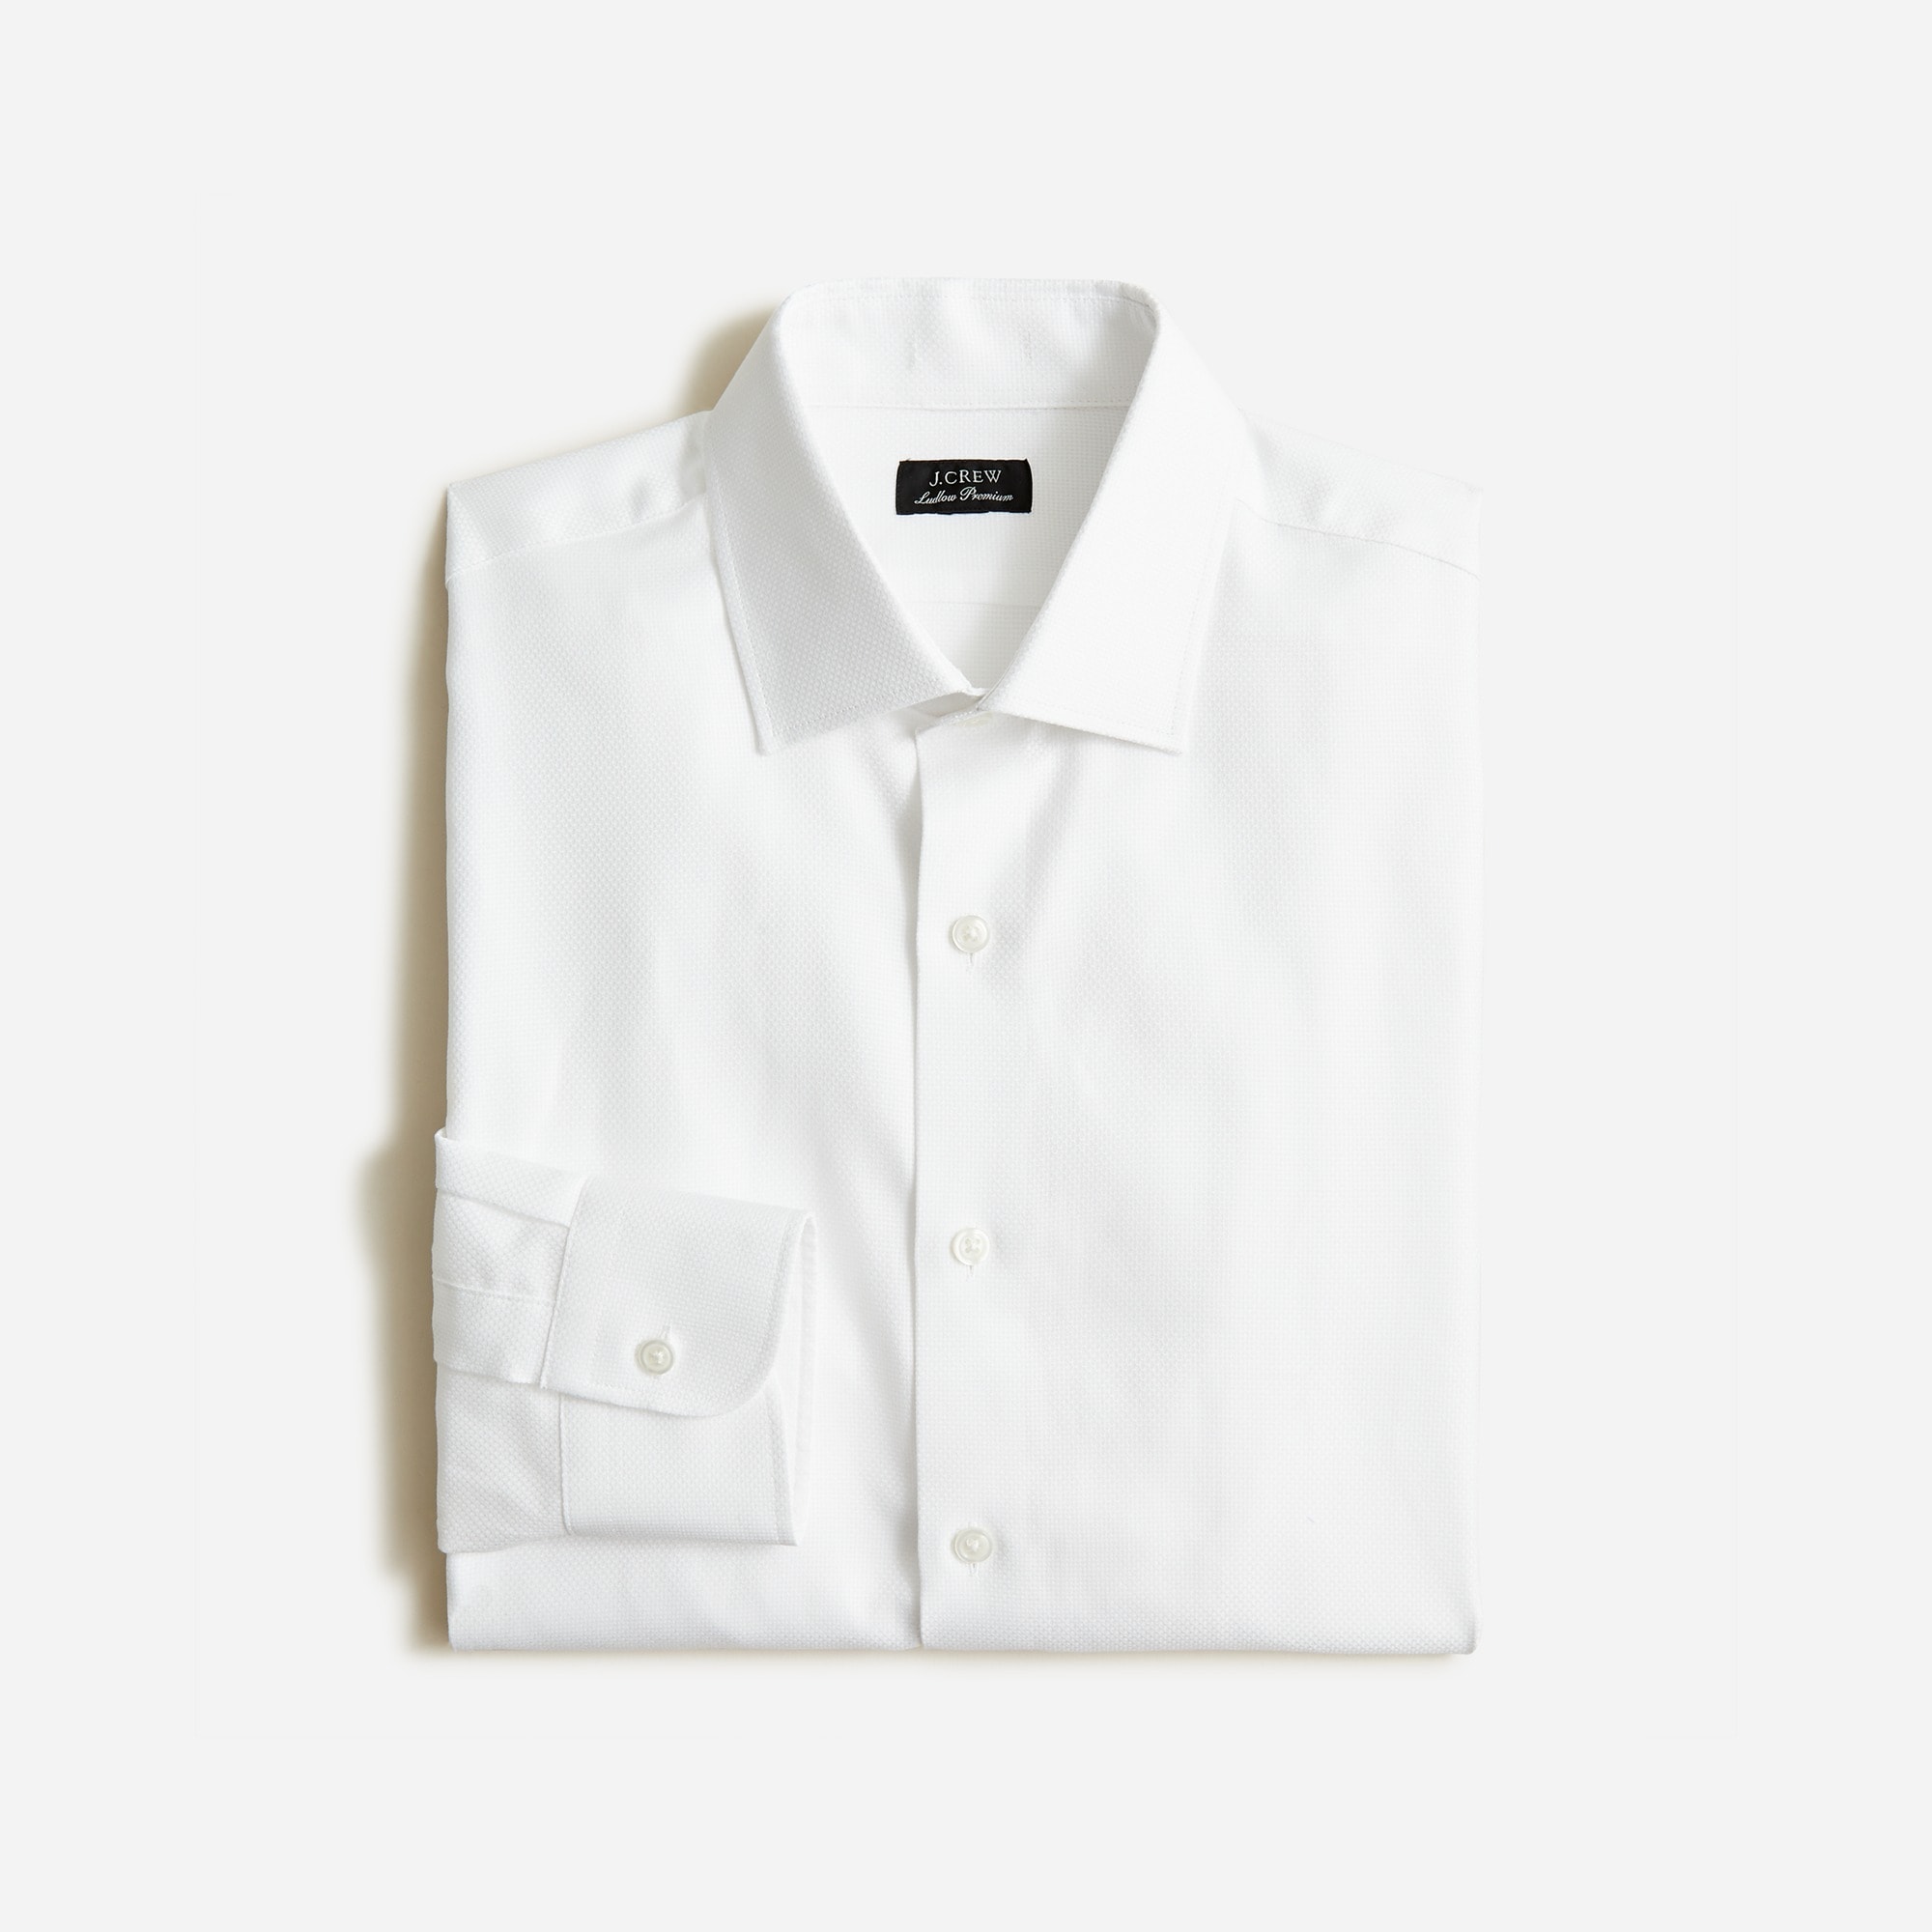 Jcrew Slim-fit Ludlow Premium fine cotton dress shirt in dobby